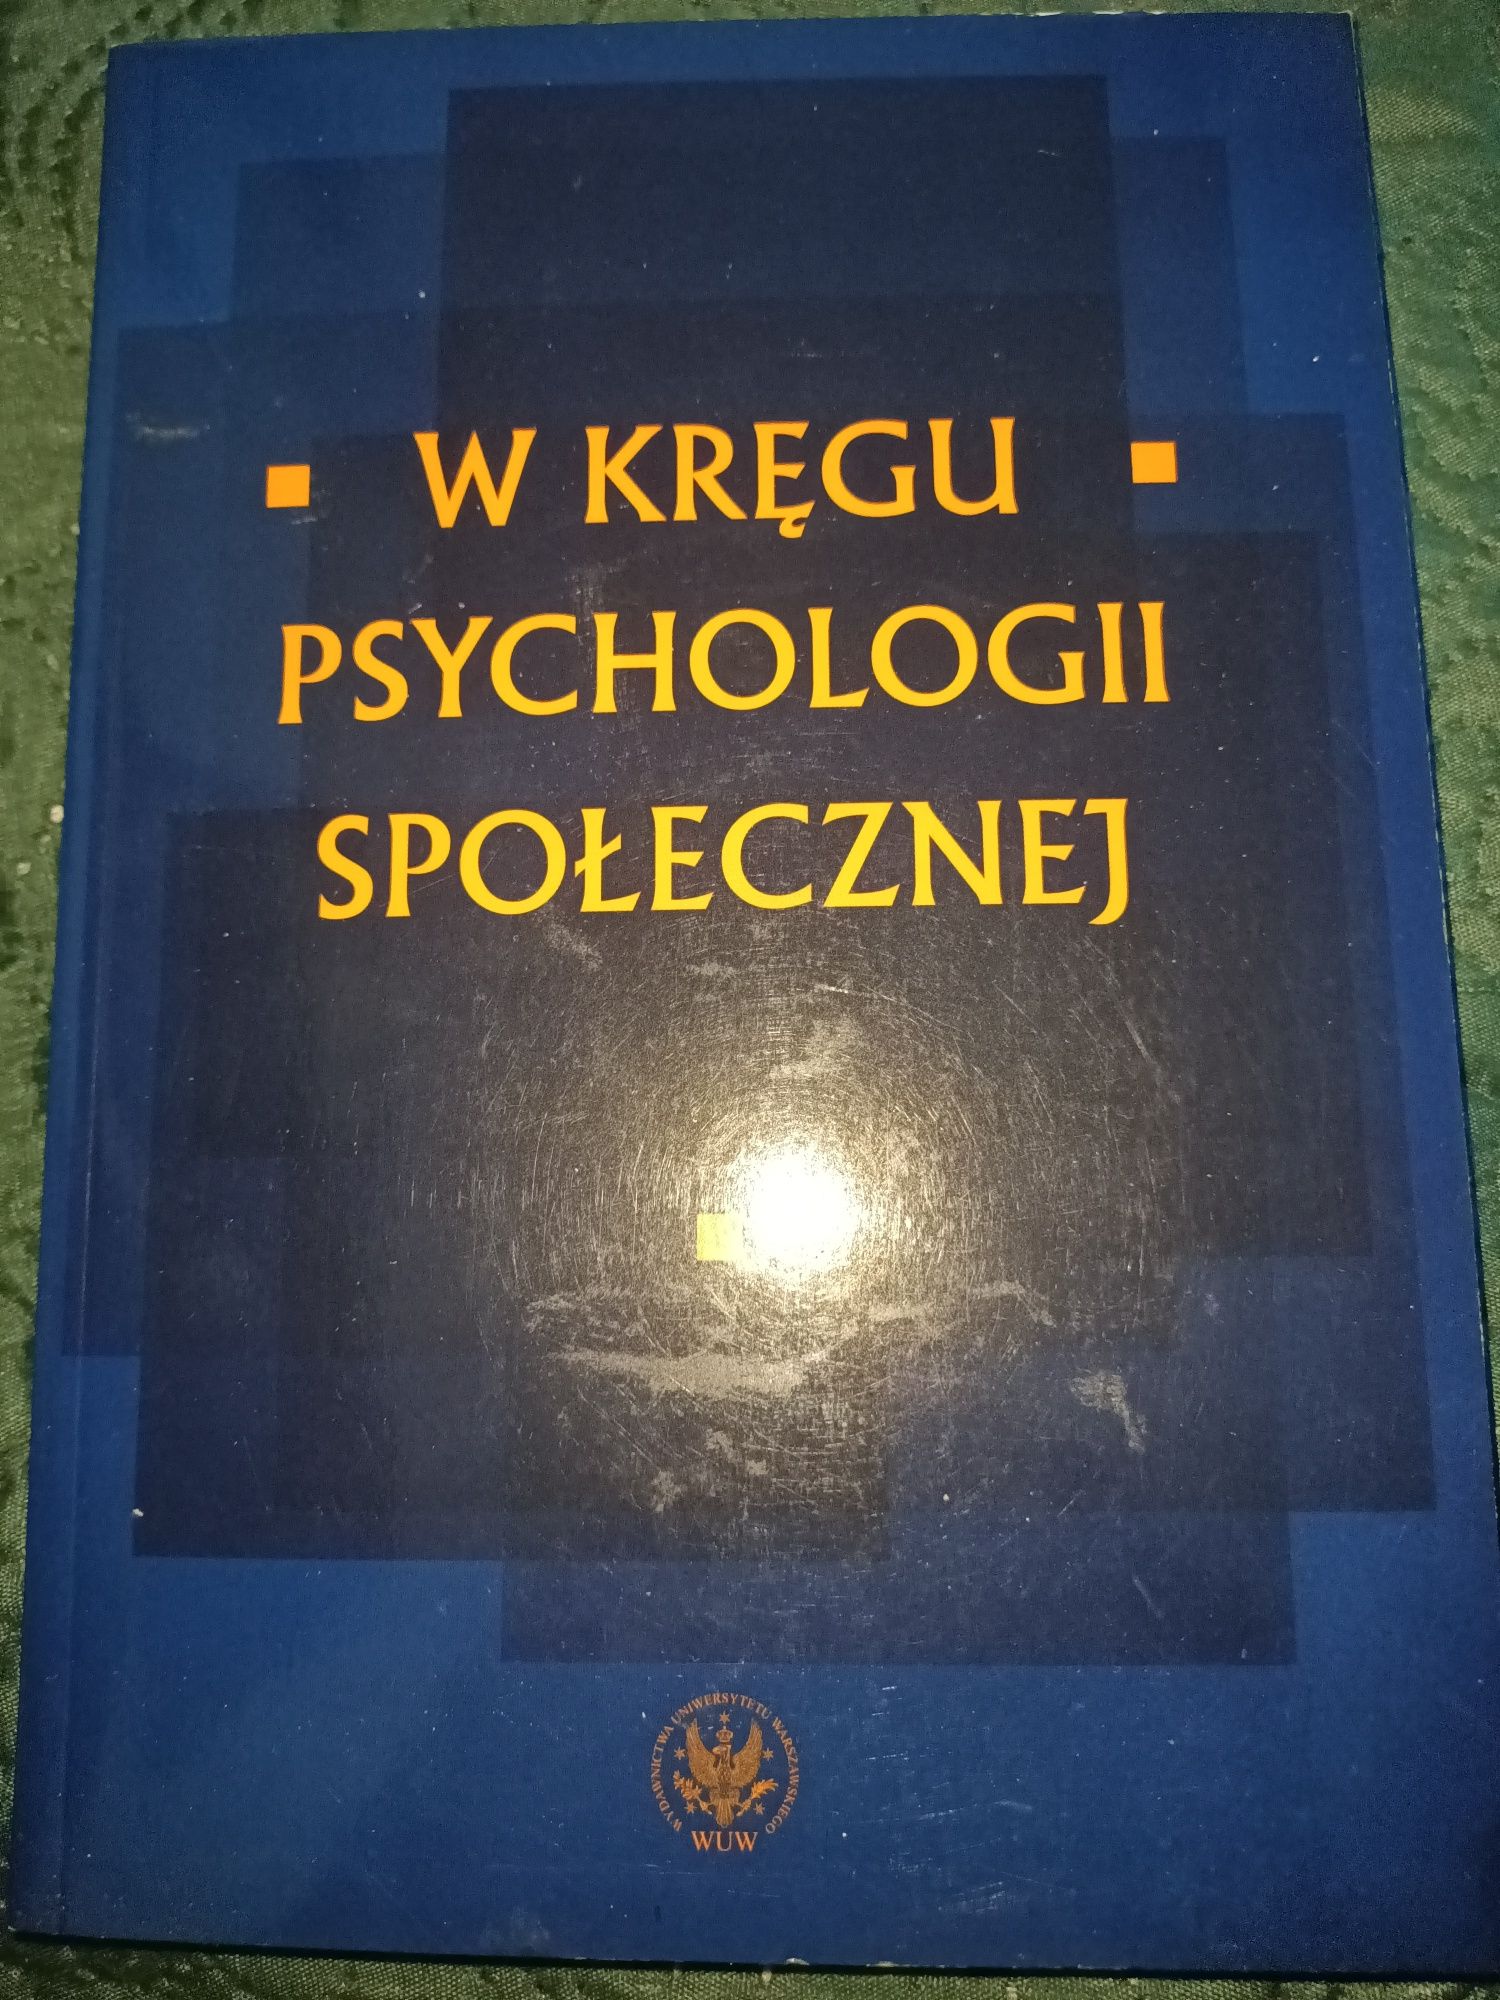 W kręgu psychologii społecznej red.nauk. Czarnota-Bojarska